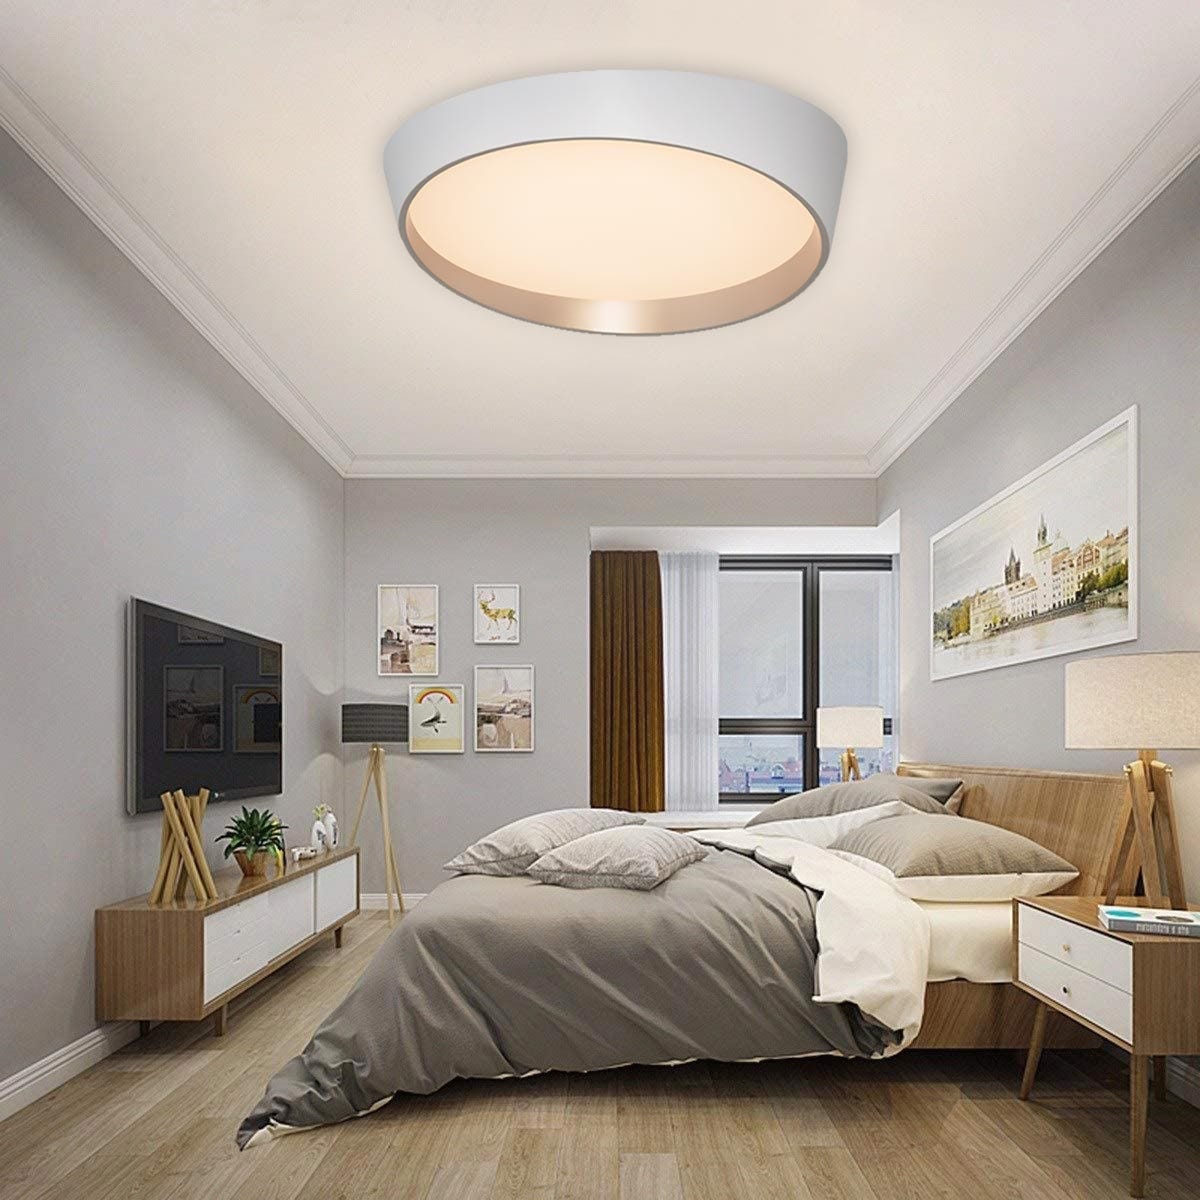 Moderna lámpara de techo LED 46W rendimiento 360W lámpara de techo